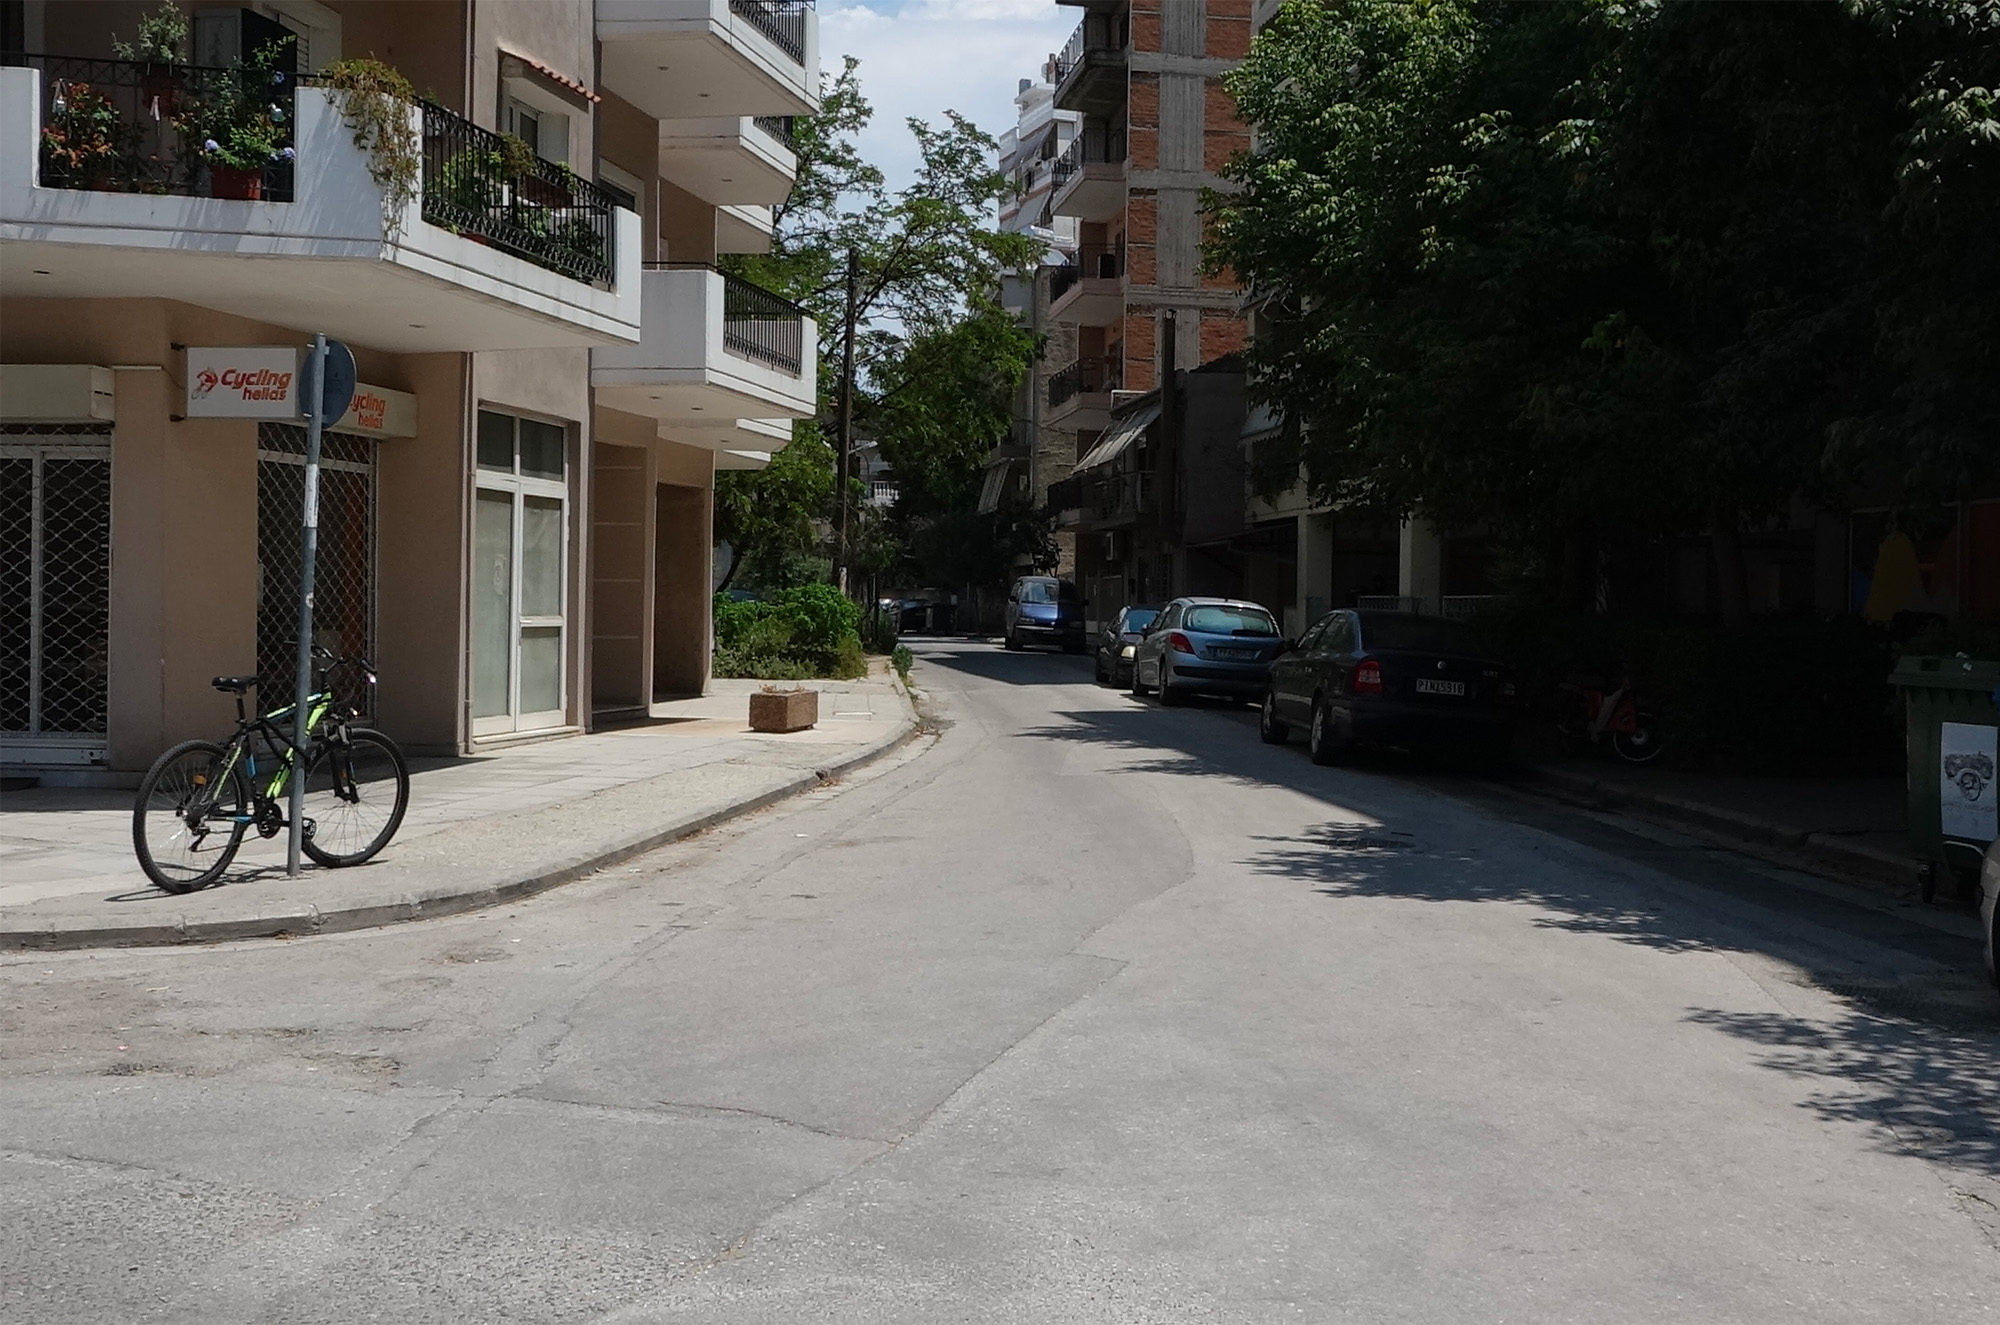 Δήμος Λαρισαίων: Ξεκινούν τα έργα για την ανακατασκευή της Βυζαντίου